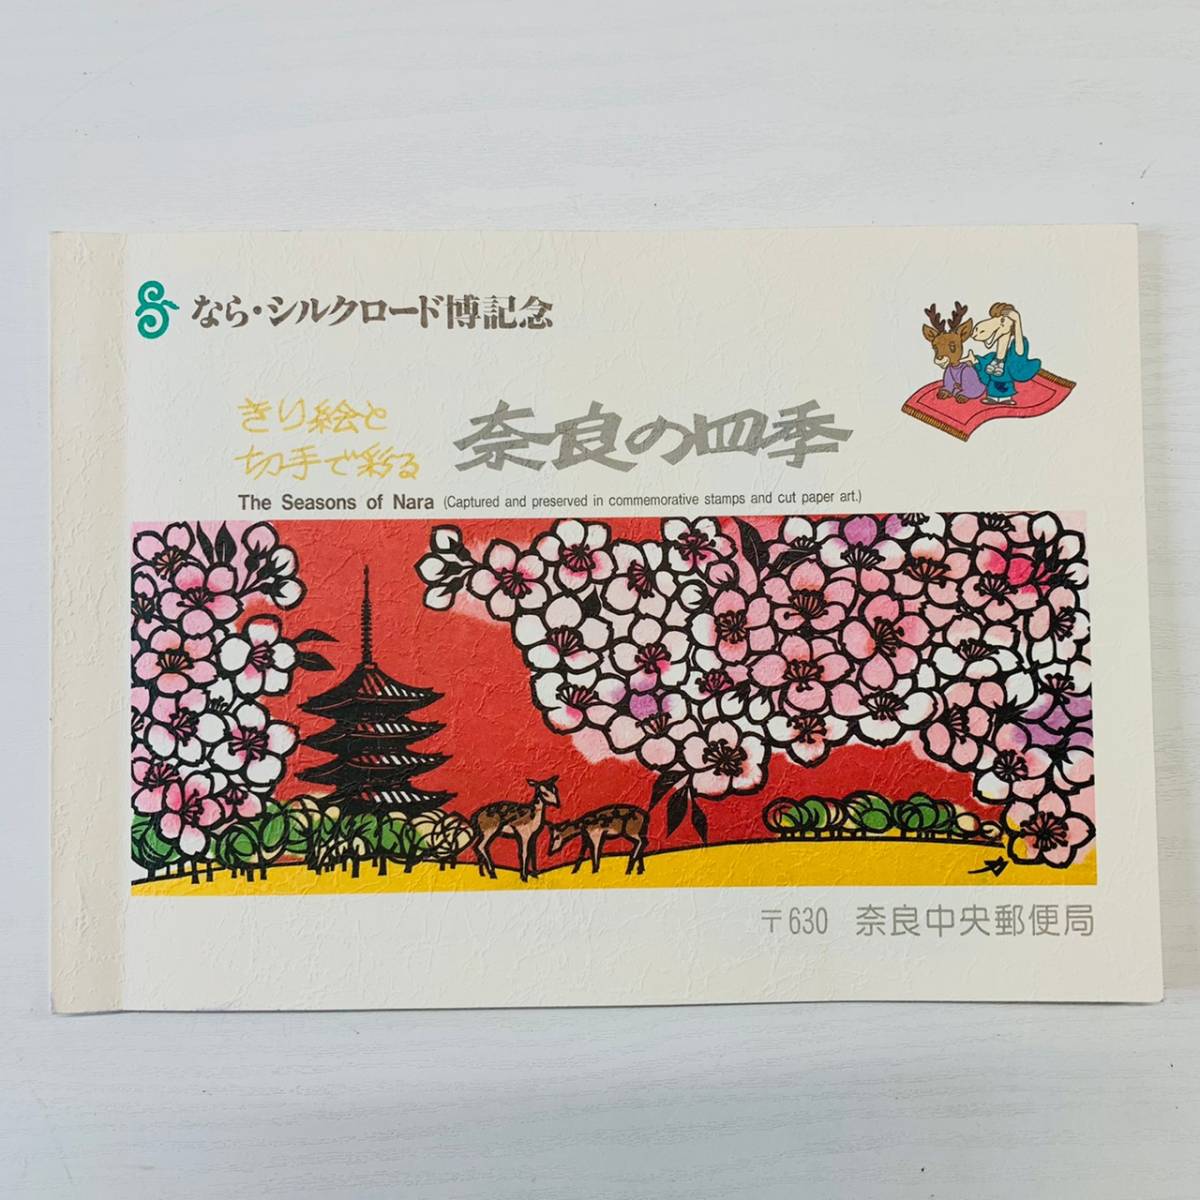 なら・シルクロード博記念 きり絵と切手で彩る 奈良の四季 〒630 奈良中央郵便局_画像1